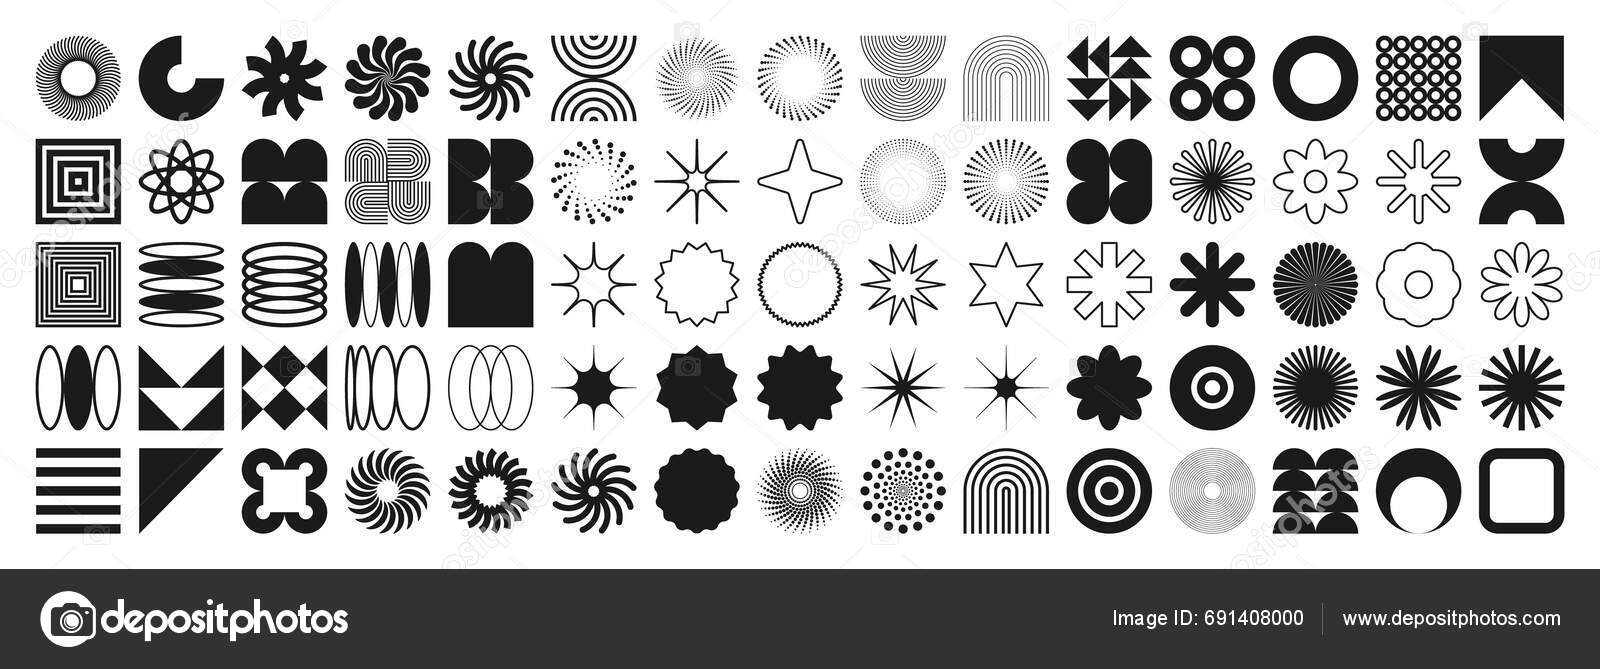 Brutalist Geometric Shapes Symbols Simple Primitive Elements Forms ...